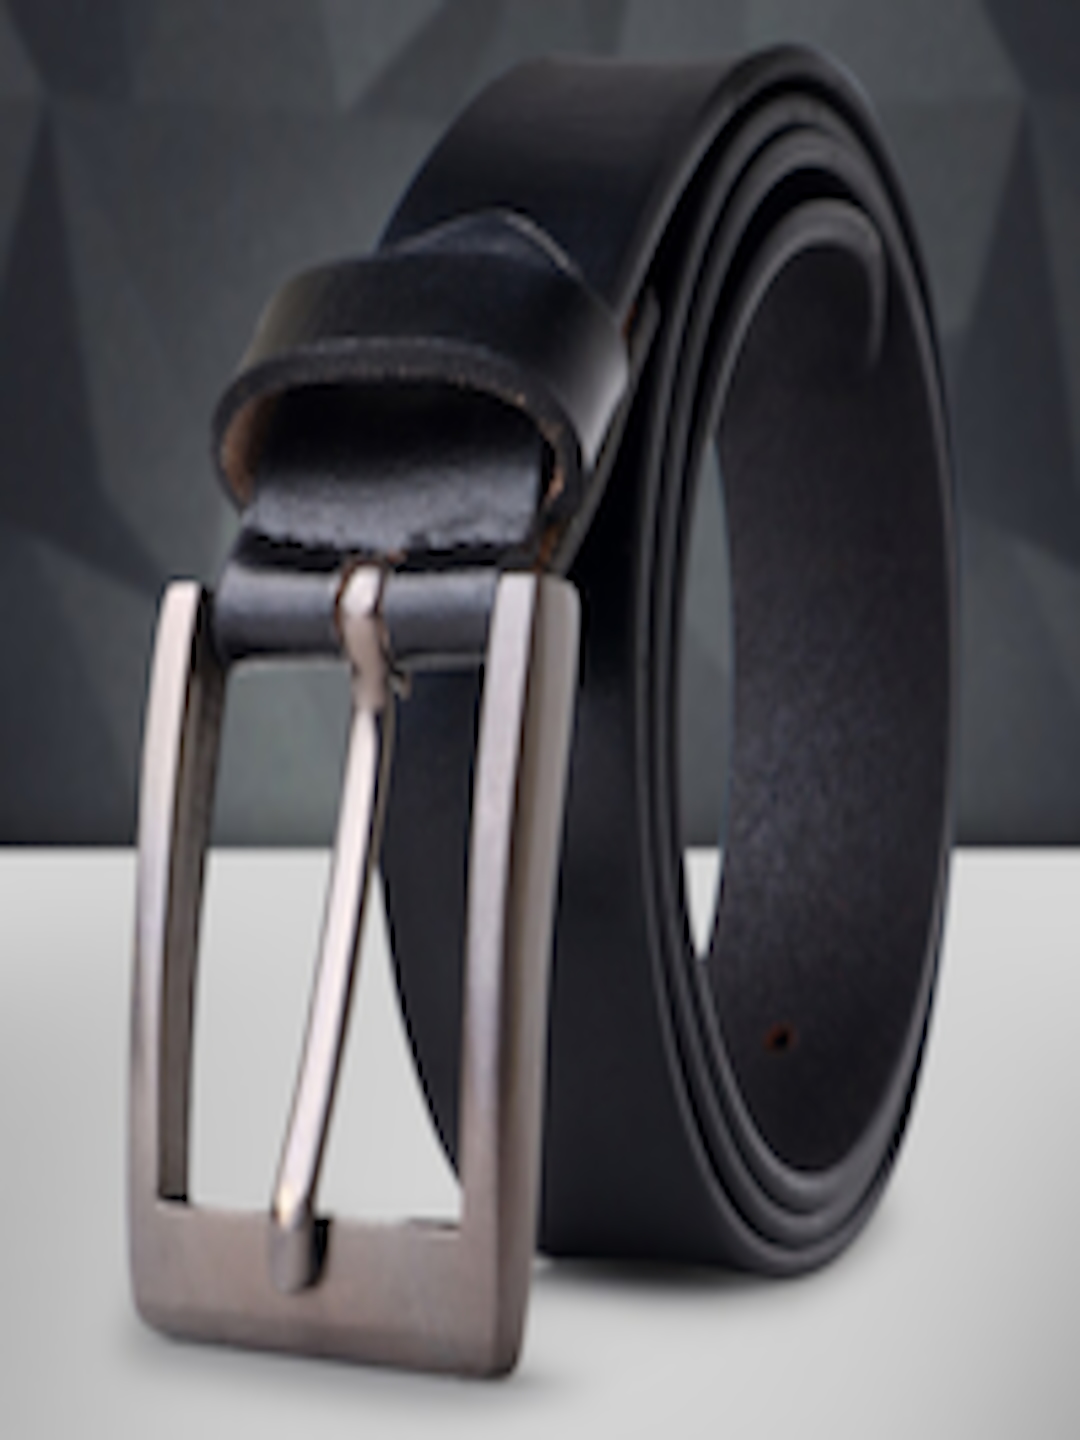 Buy INVICTUS Men Genuine Leather Formal Belt - Belts for Men 24705978 ...